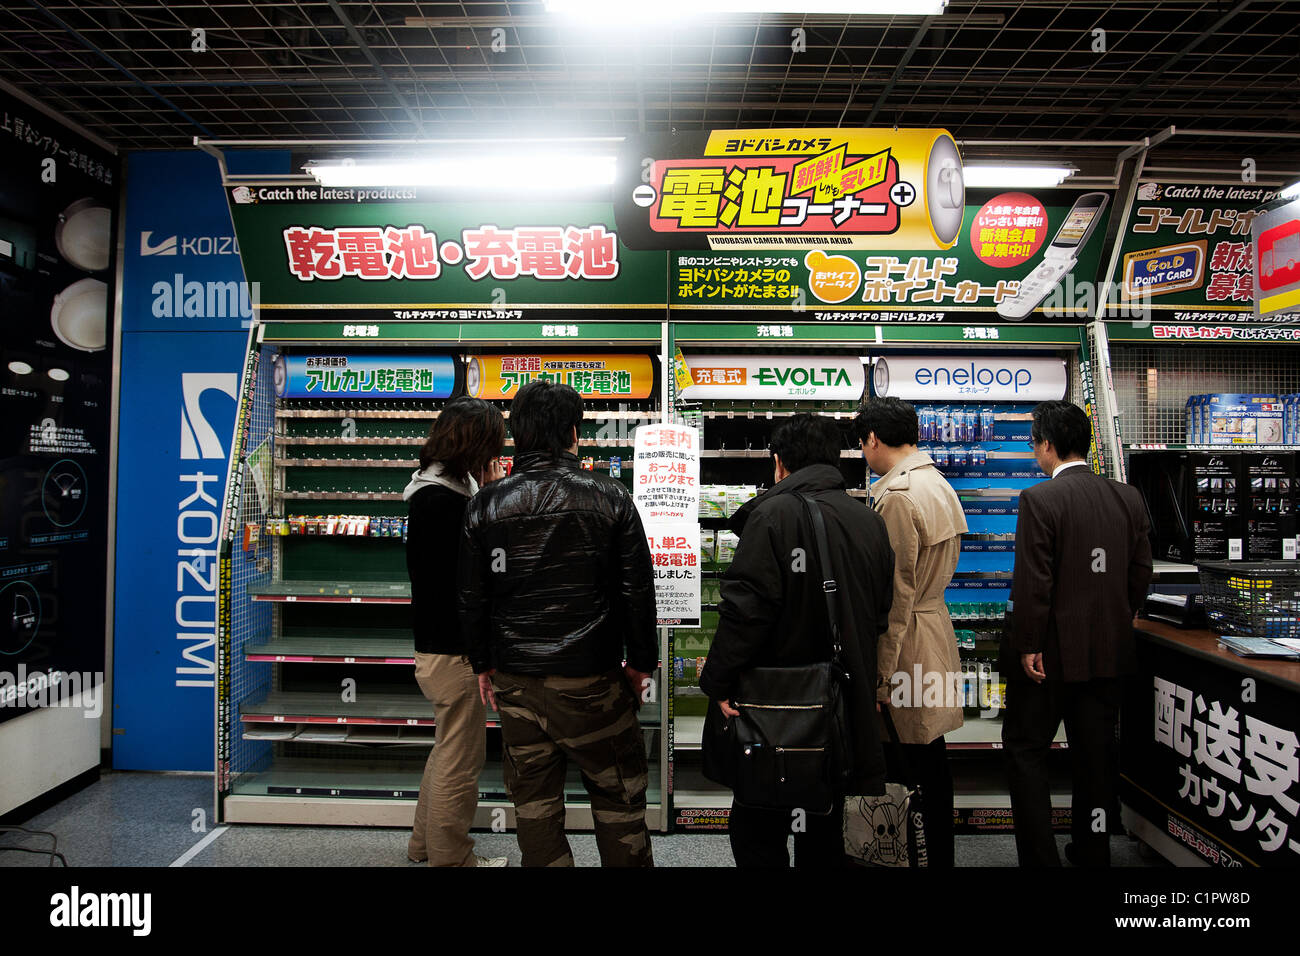 Los estantes vacíos en un almacén eléctrico de Akihabara de Tokio. Foto de stock